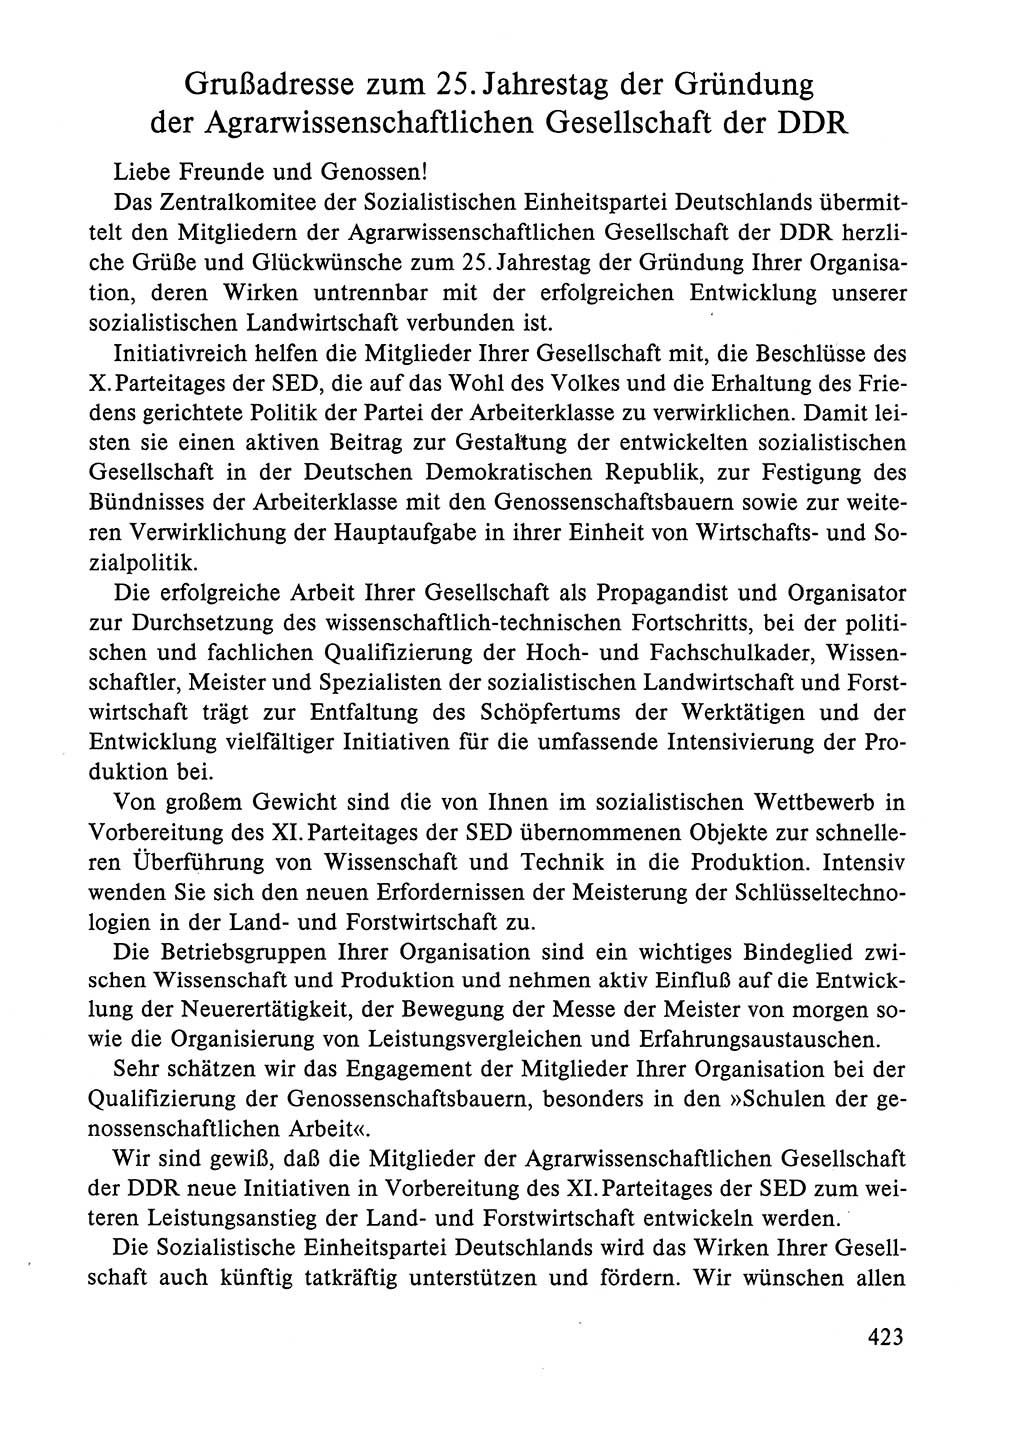 Dokumente der Sozialistischen Einheitspartei Deutschlands (SED) [Deutsche Demokratische Republik (DDR)] 1984-1985, Seite 423 (Dok. SED DDR 1984-1985, S. 423)